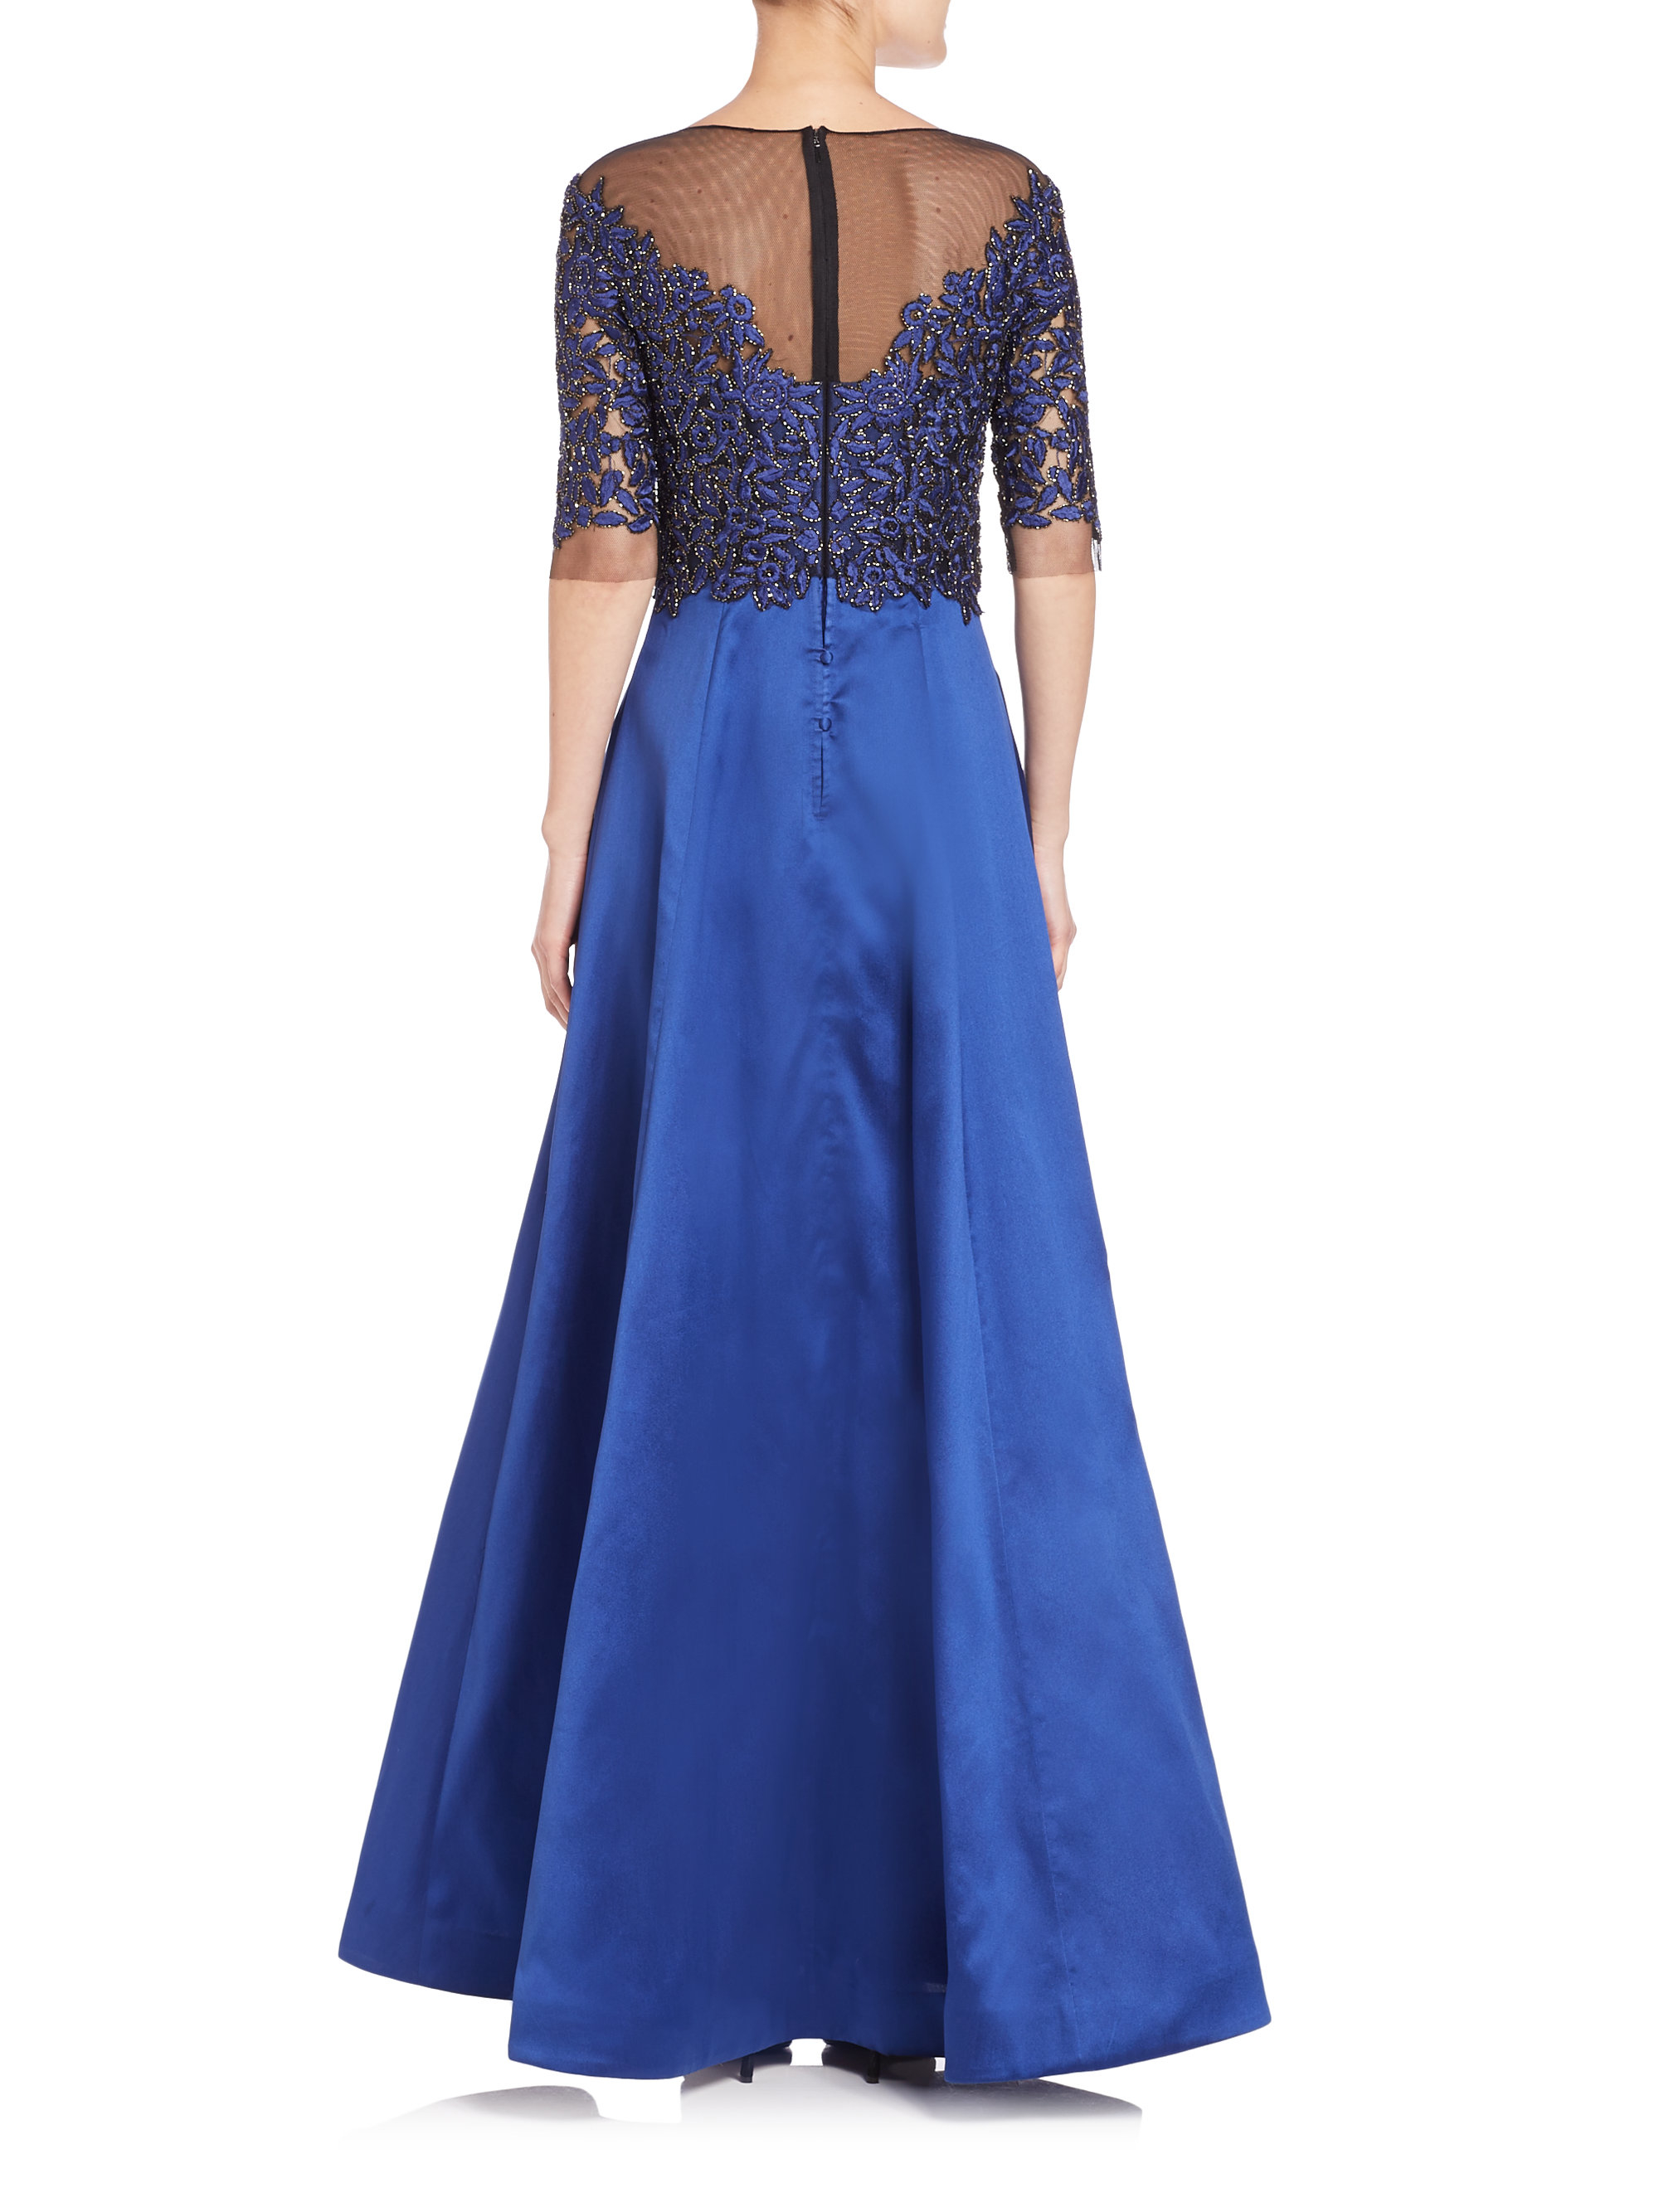 Lyst - Teri jon Embellished Lace & Taffeta Gown in Blue